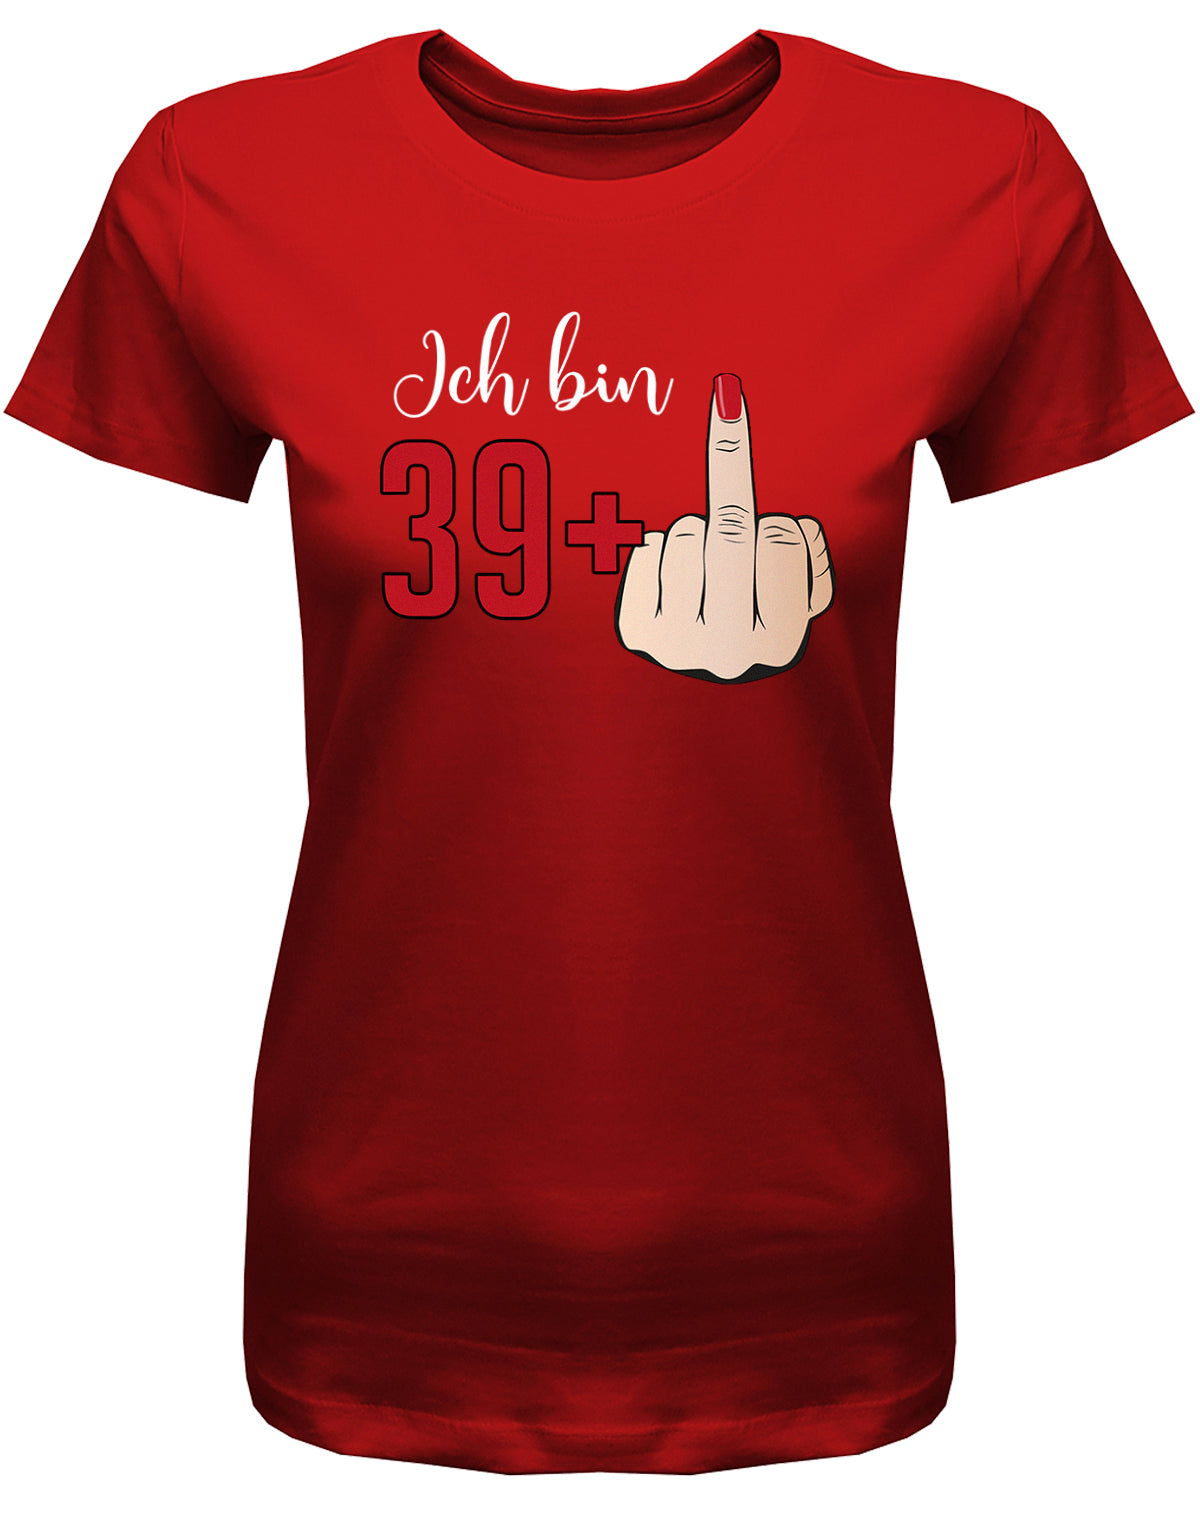 Lustiges T-Shirt zum 40 Geburtstag für die Frau Bedruckt mit Ich bin 39+ Stinkefinger. Rot